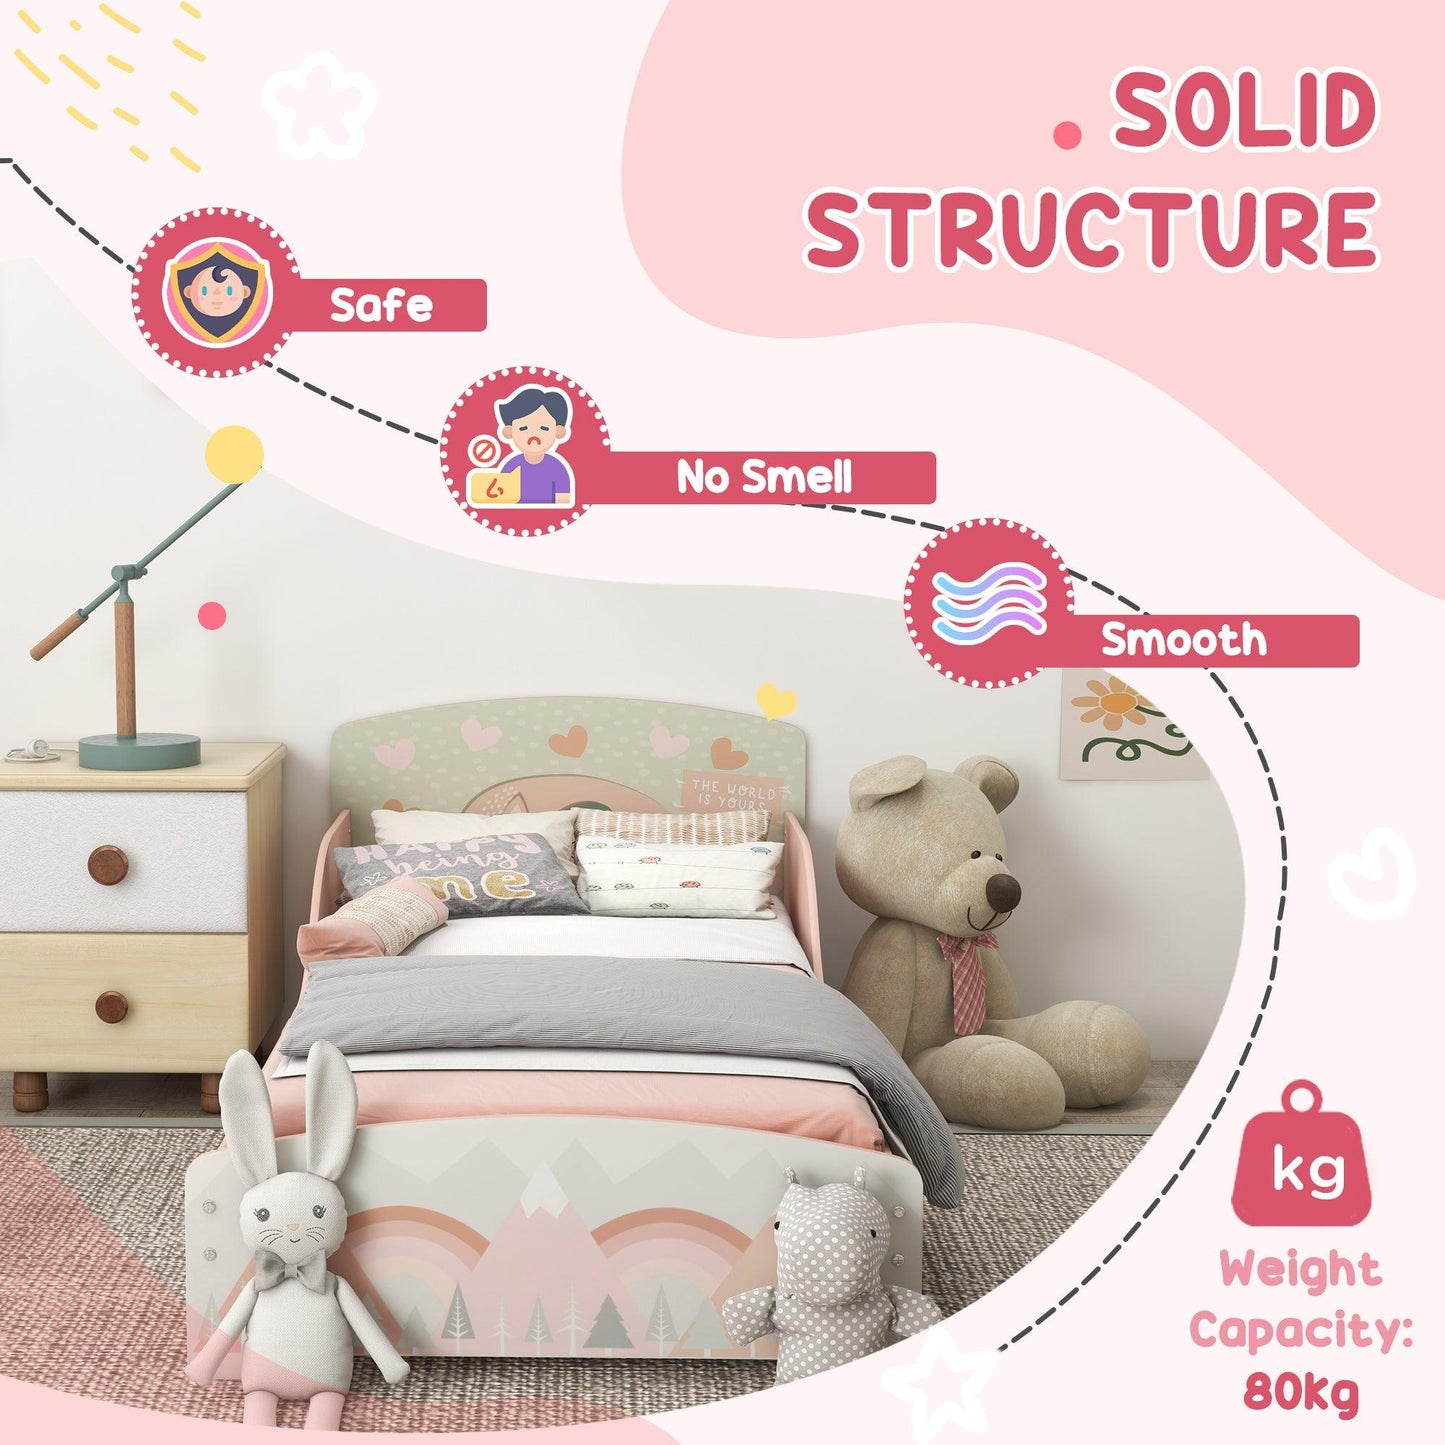 ZONEKIZ Toddler Bed Frame and Dressing Table Set, Pink Animal Design Furniture for Ages 3-6